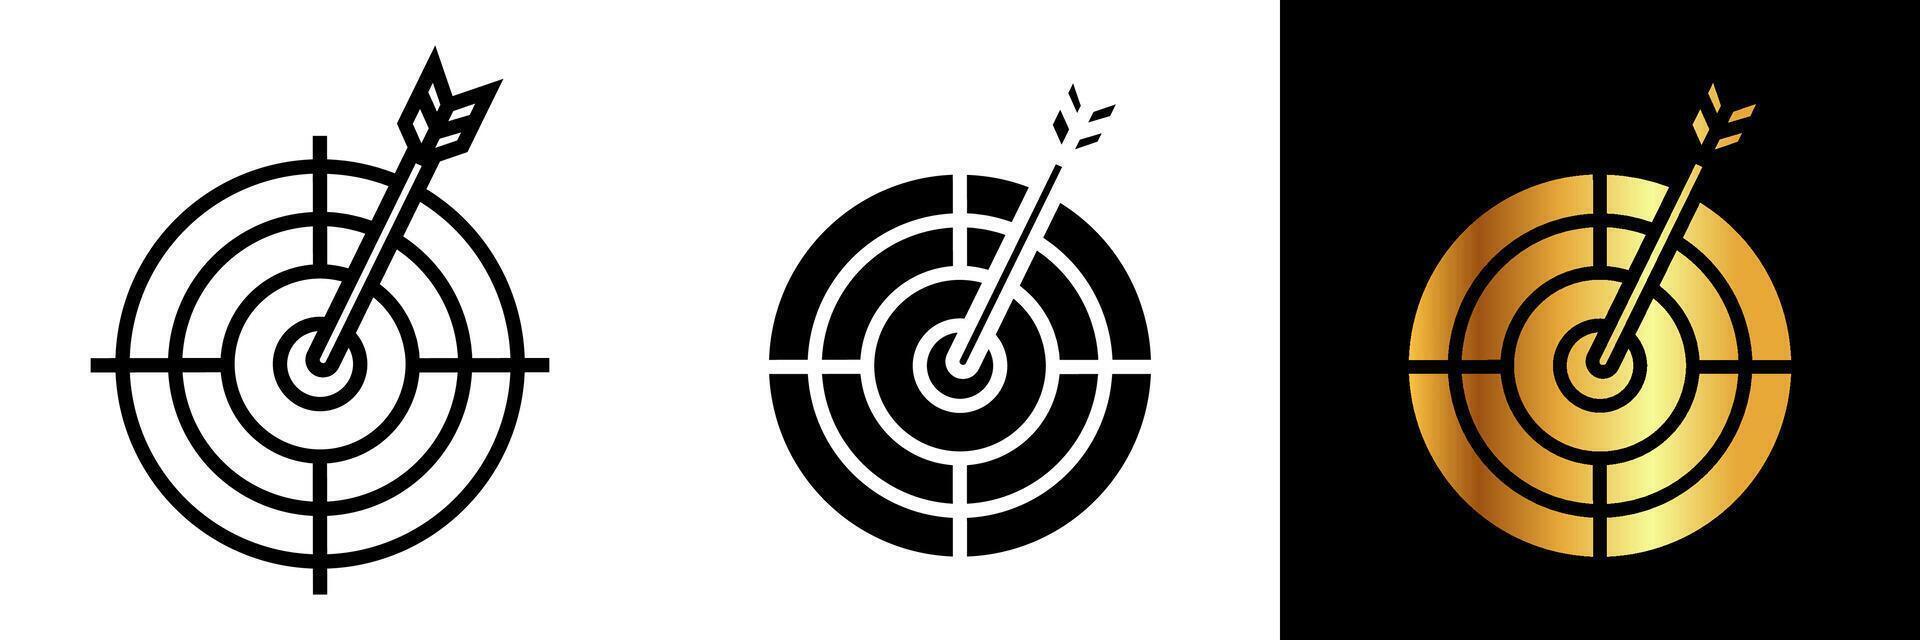 das bullseye Symbol symbolisiert Präzision, Genauigkeit, und Schlagen das Ziel tot Center. es repräsentiert Fokus, Tor Leistung, und Exzellenz im Zielen zum Erfolg. vektor